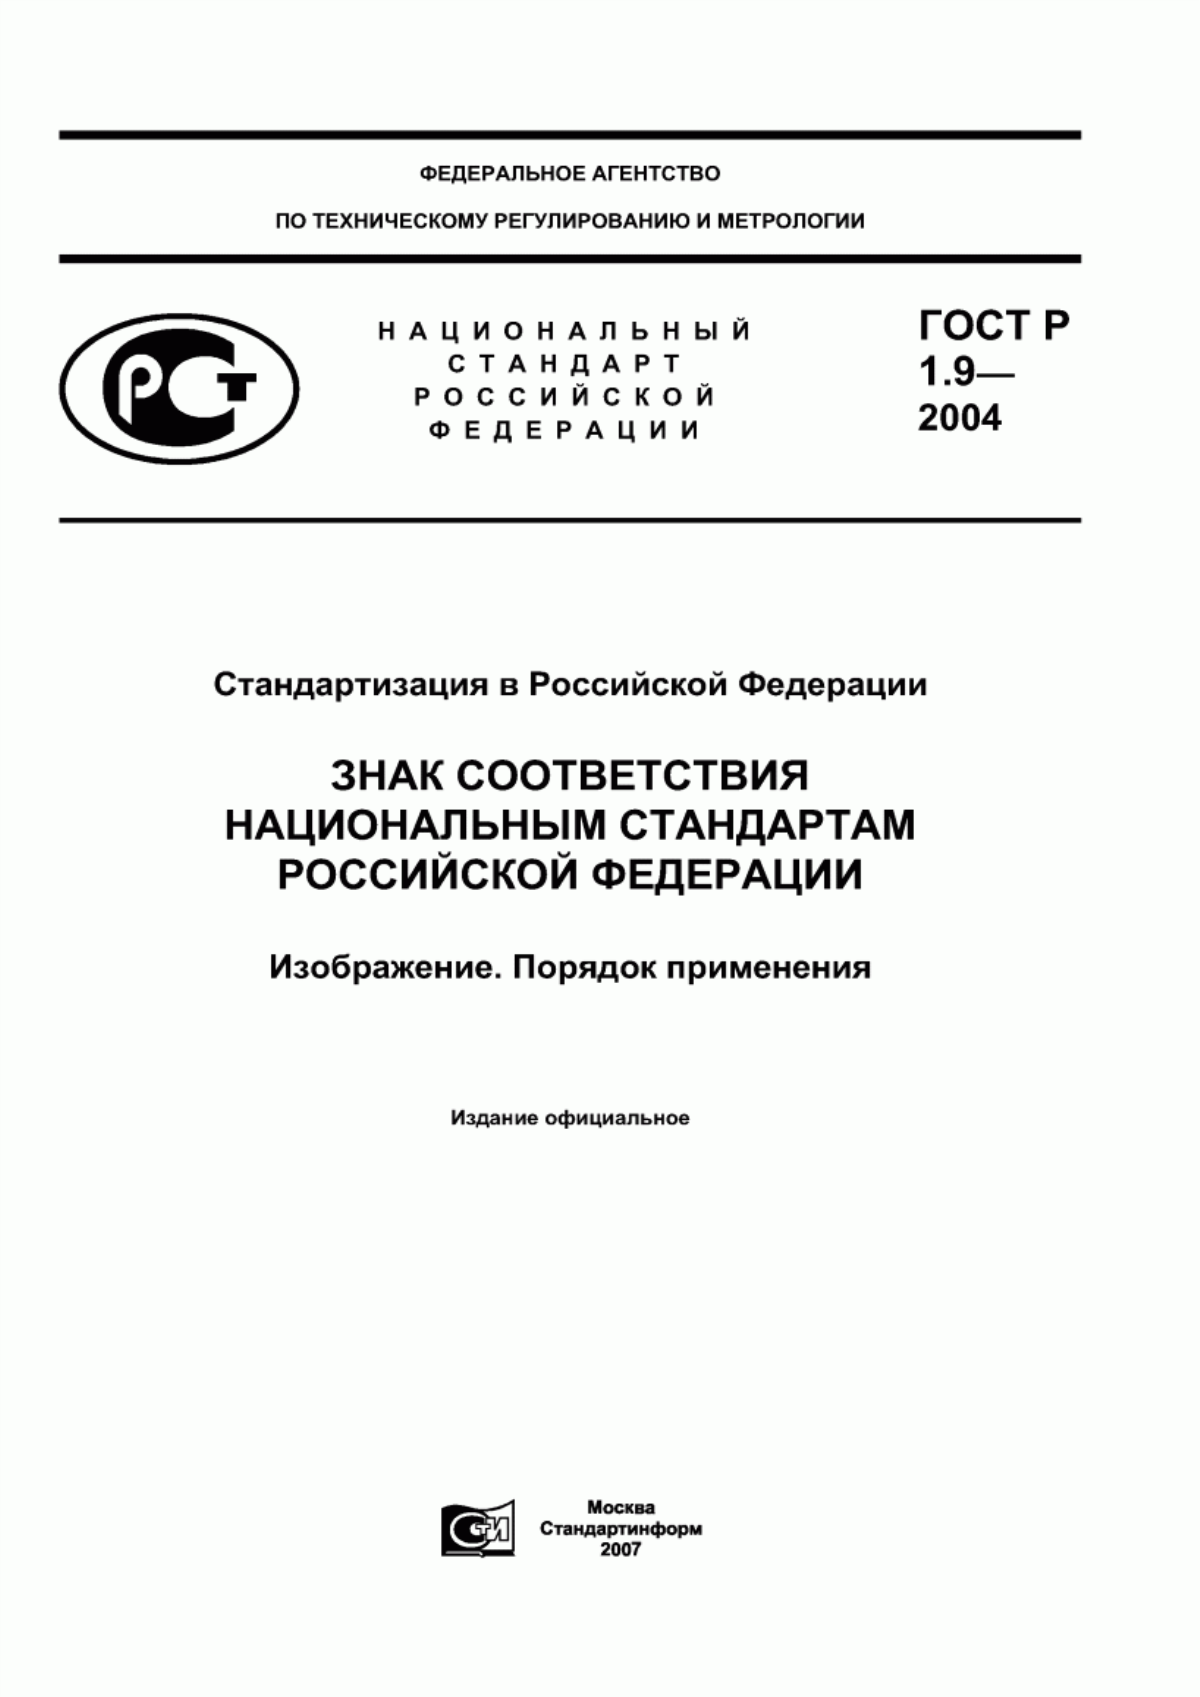 ГОСТ Р 1.9-2004 Стандартизация в Российской Федерации. Знак соответствия национальным стандартам Российской Федерации. Изображение. Порядок применения